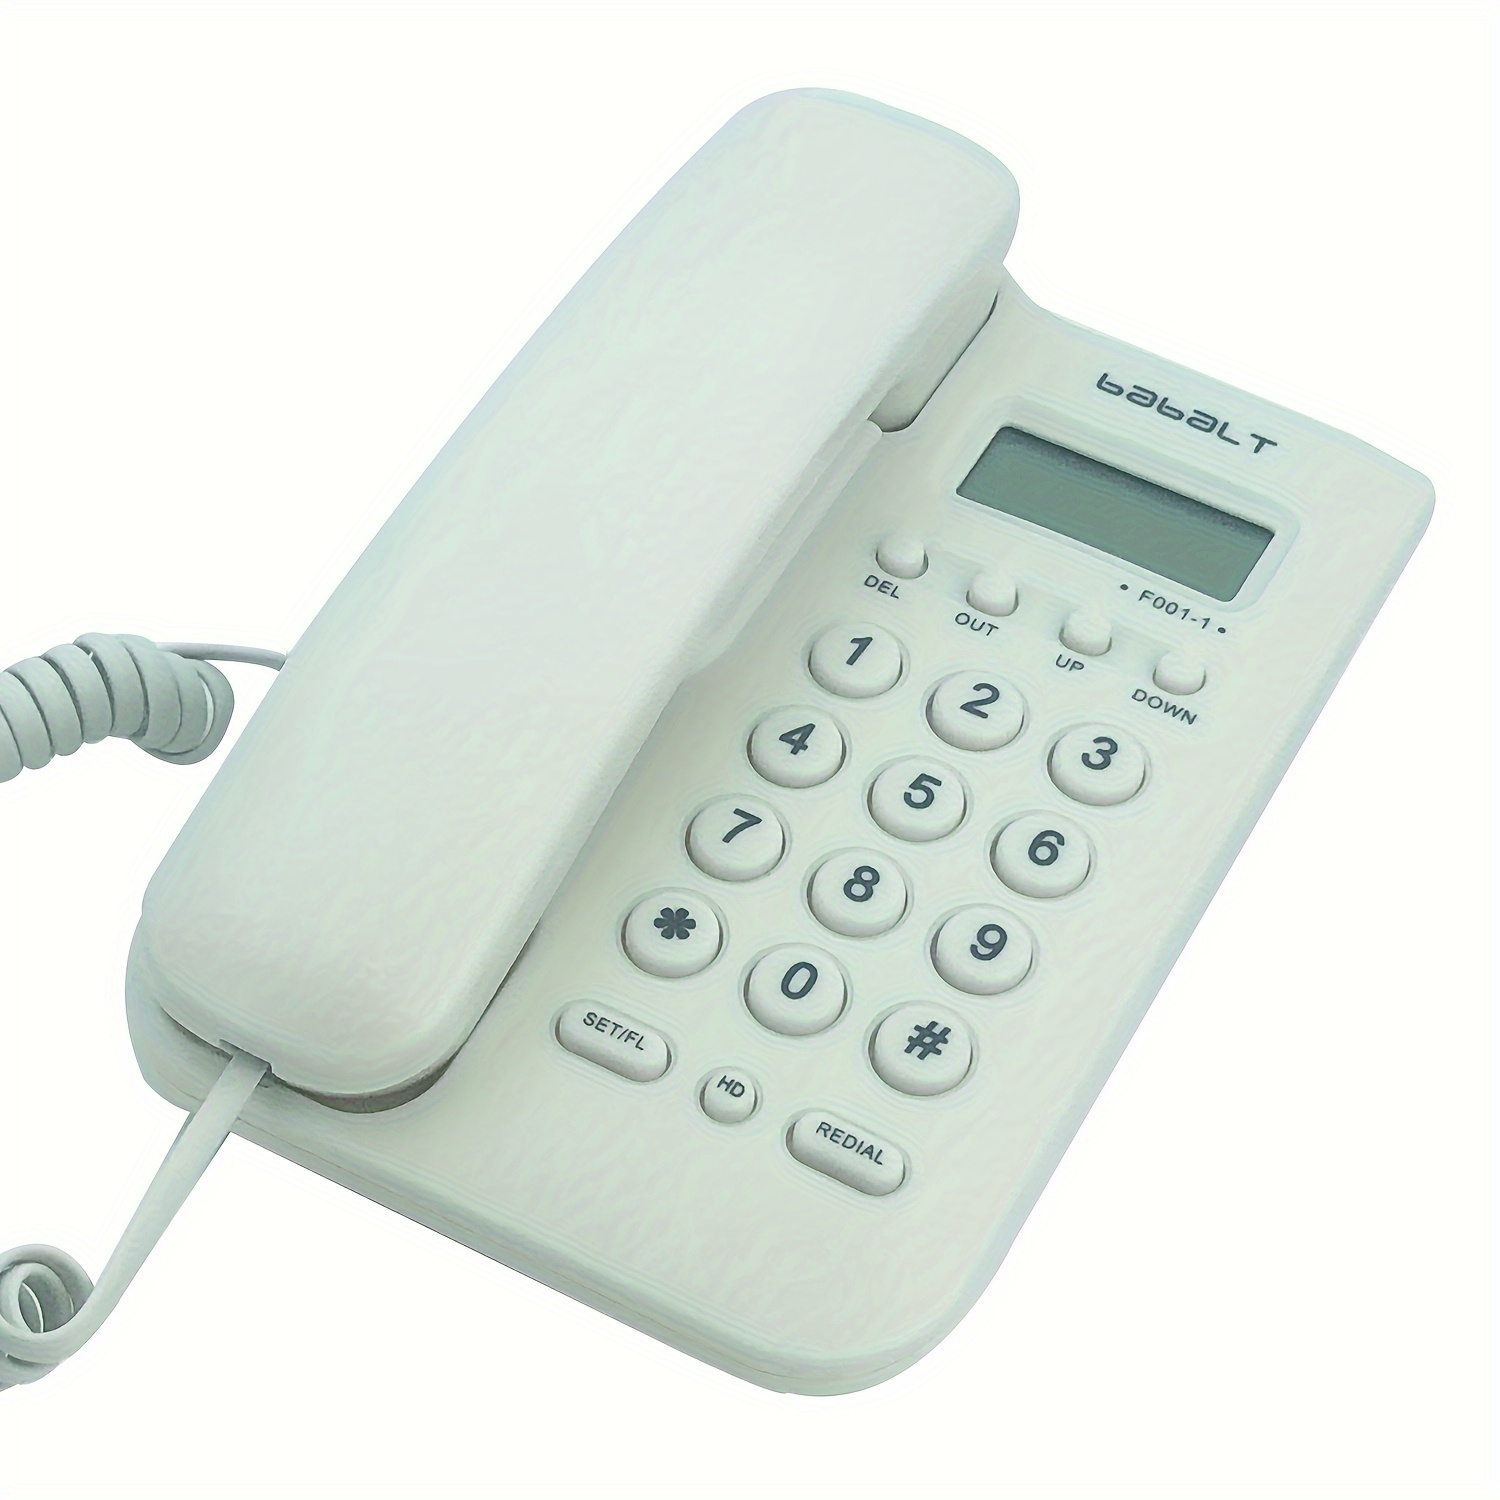 Mejores teléfonos fijos con identificador de llamadas que puedes comprar